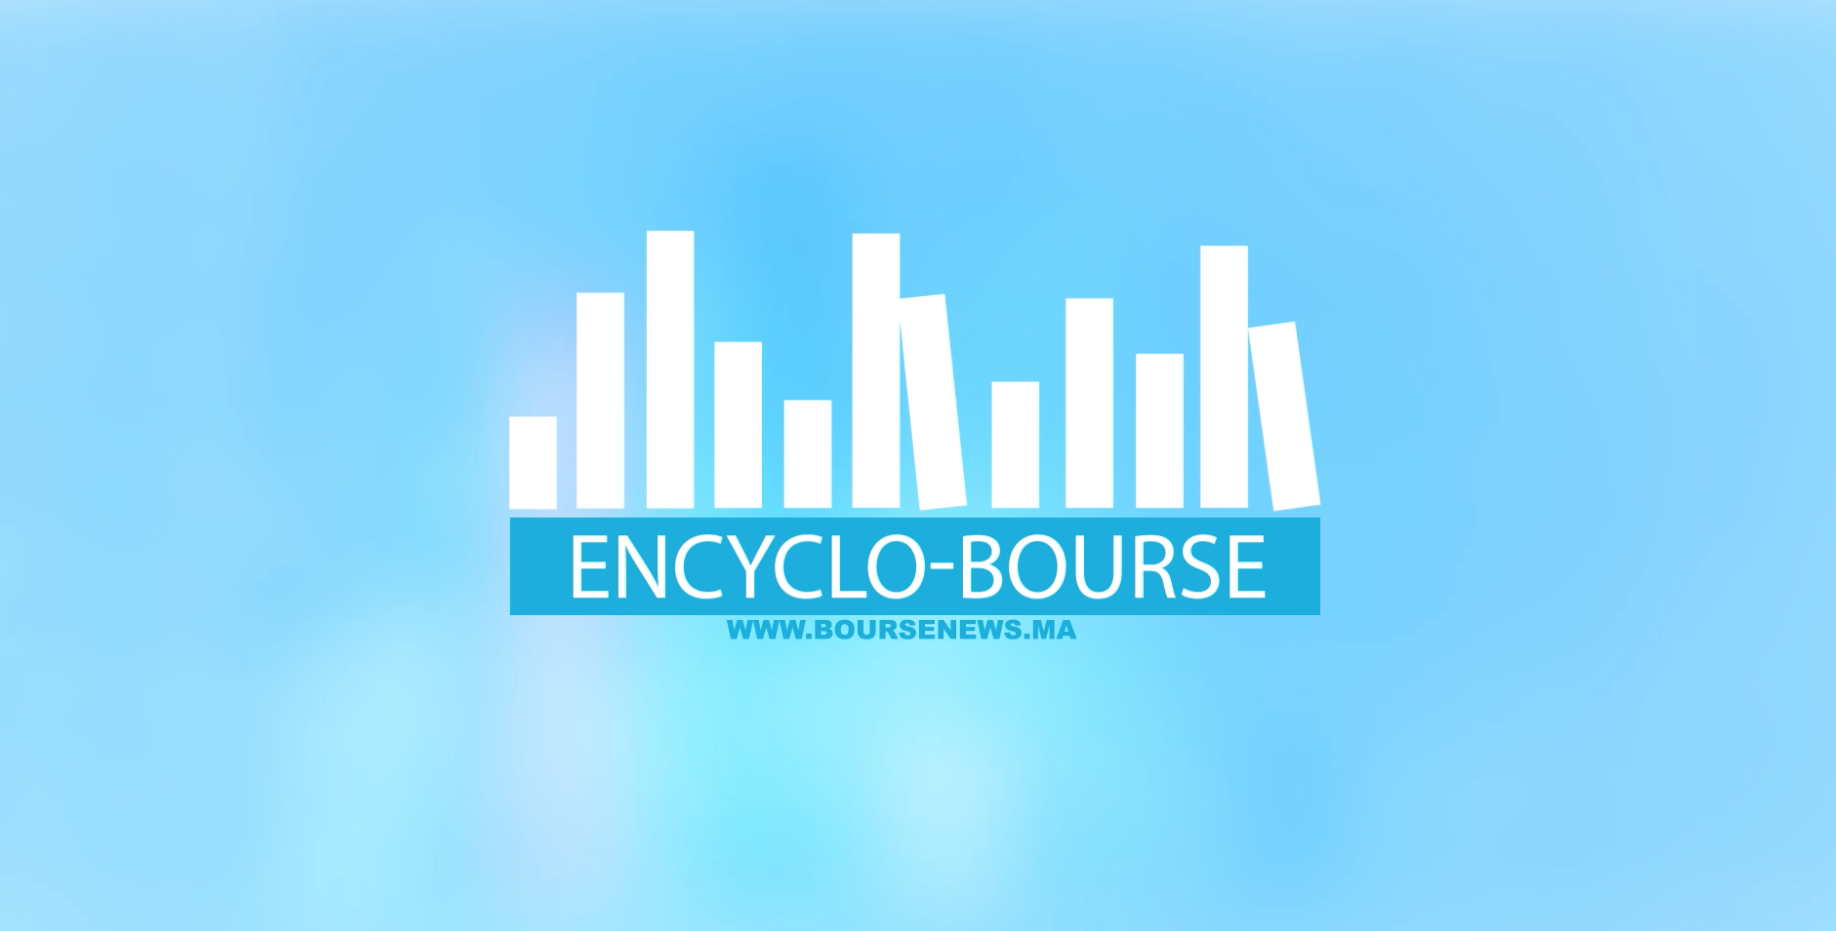 Encyclo-Bourse : Comment sont classées les entreprises dans les différents compartiments boursiers ?